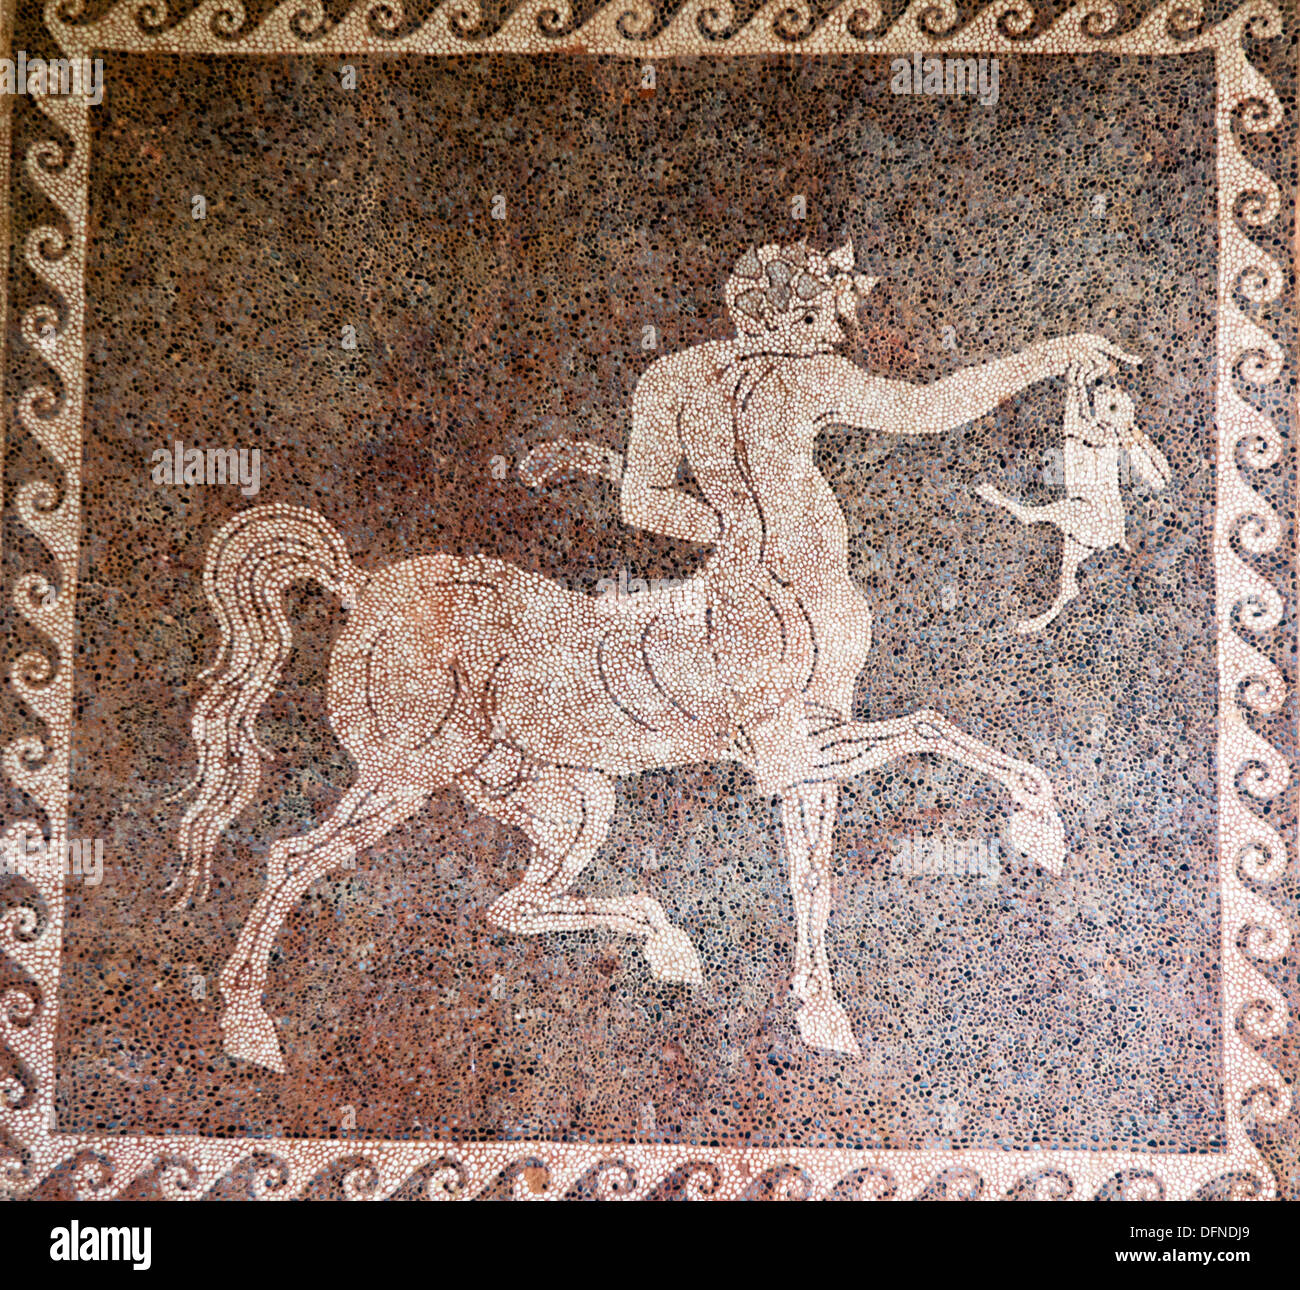 Mosaico Museo Archeologico di Rodi isole Greche - Grecia Foto Stock